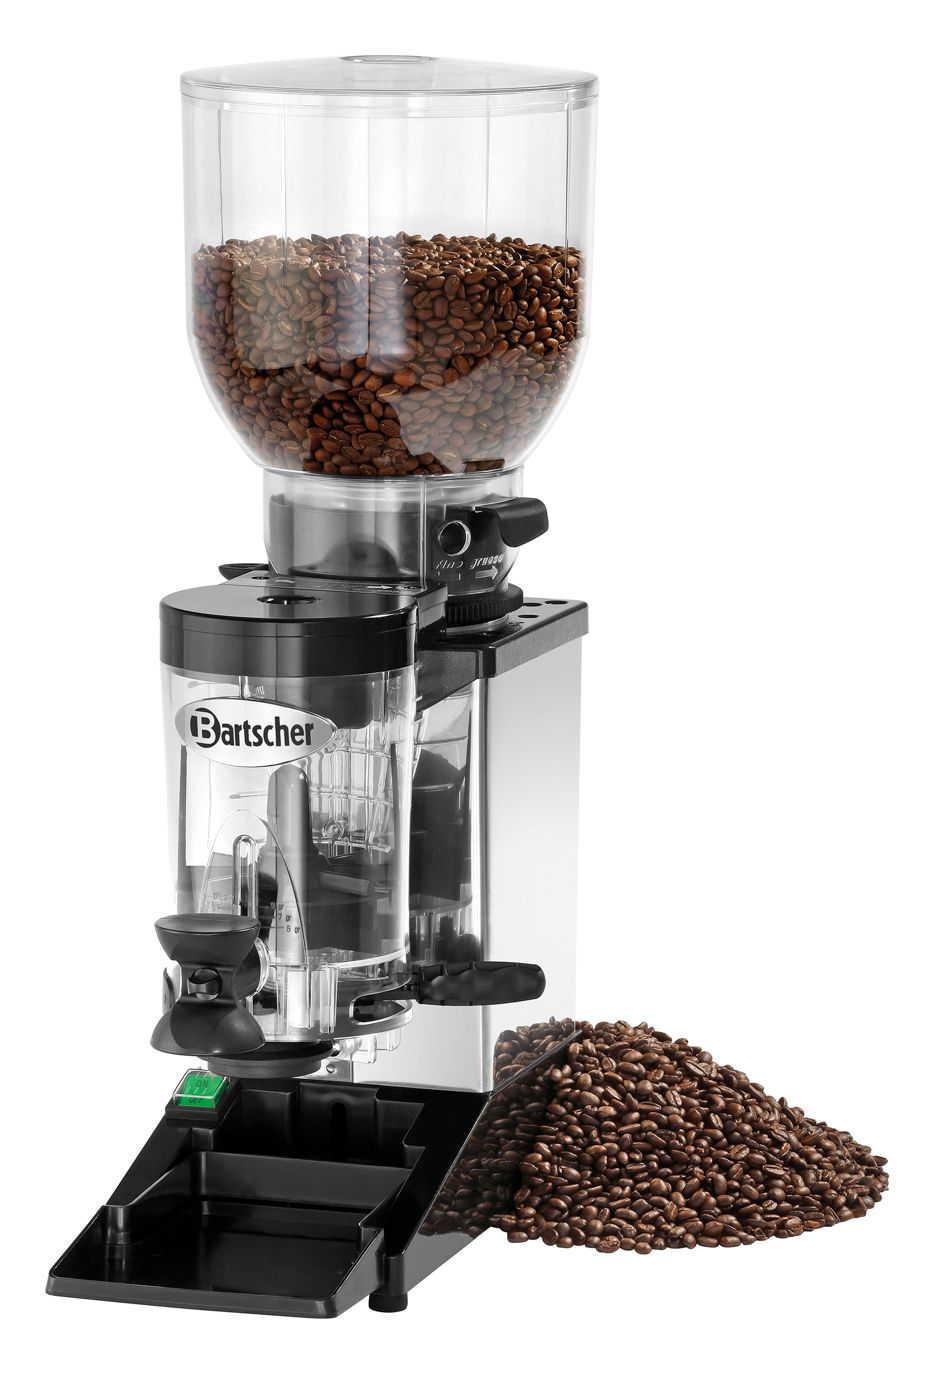 Bartscher Kaffeemühle Modell Space II | Spannung: 230 V | Maße: 20 x 39 x 600 cm. Gewicht: 8,4 kg